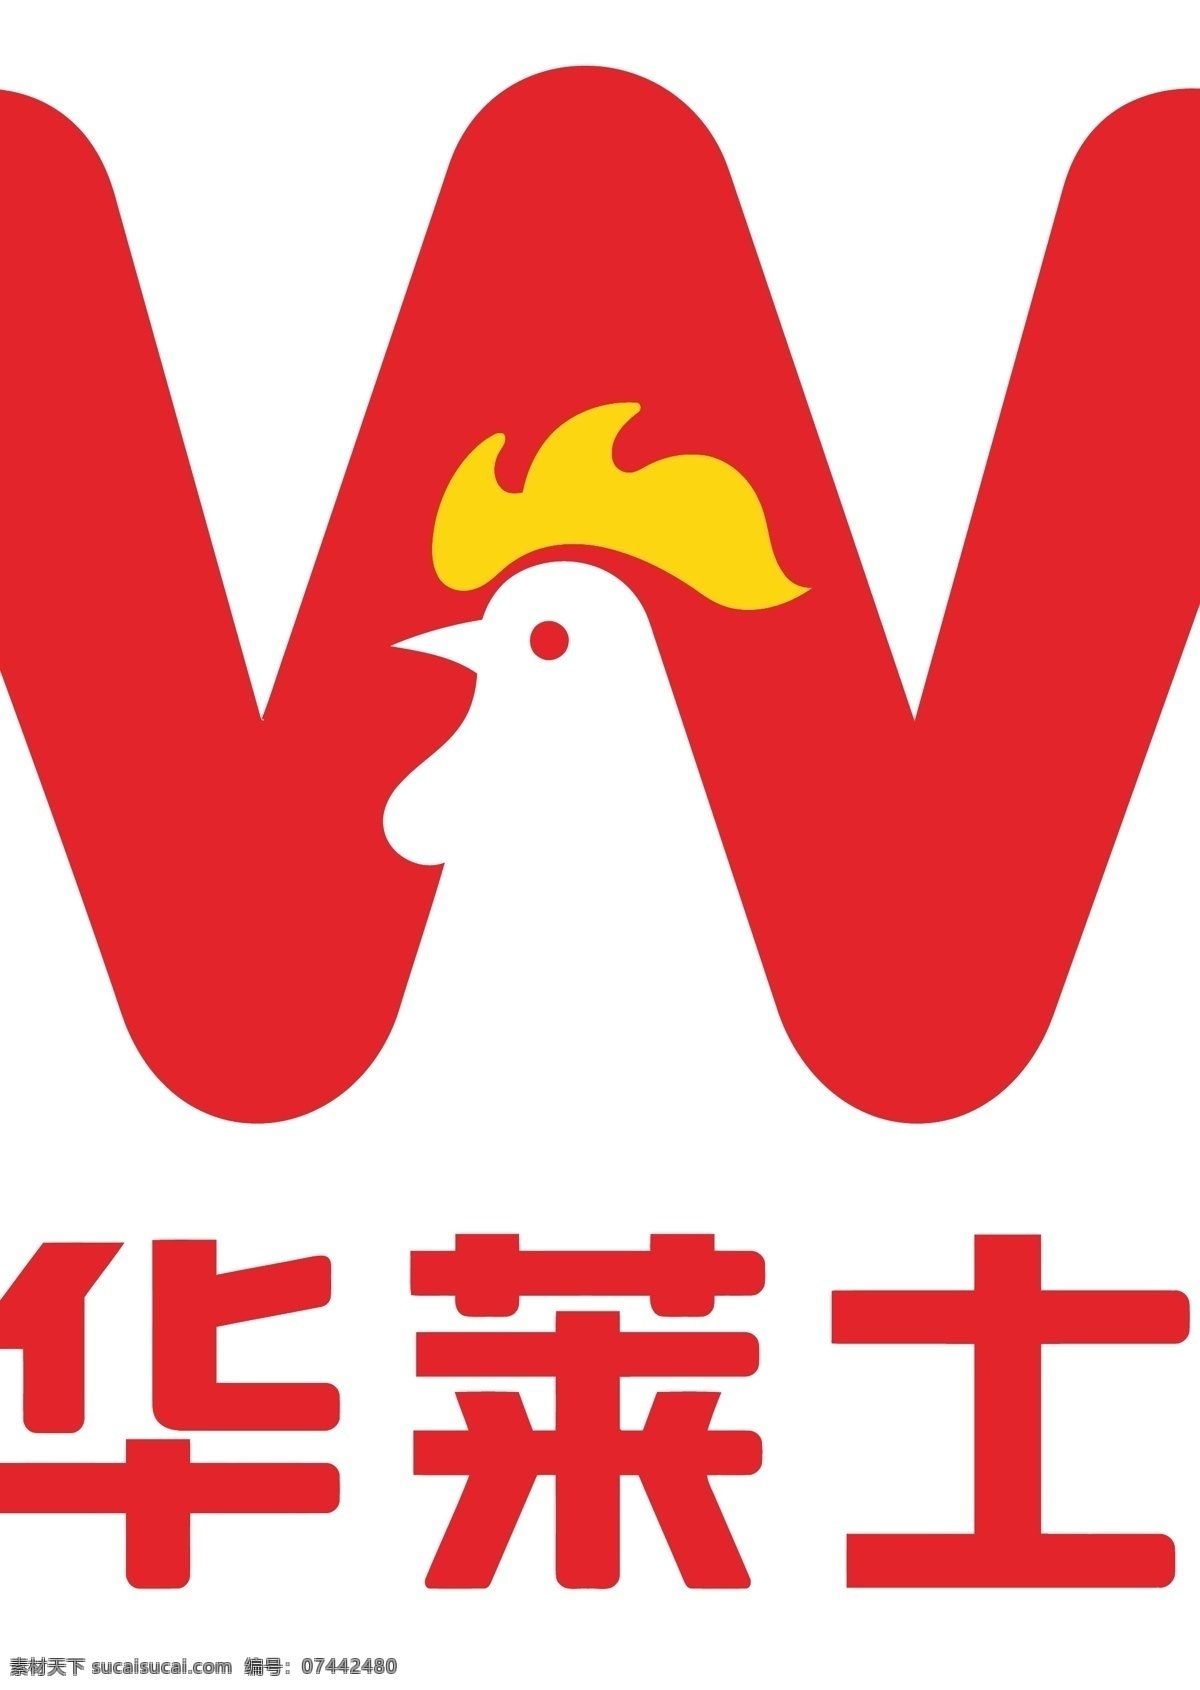 华莱士标志 华莱士 标志 logo 华莱士标识 logo设计